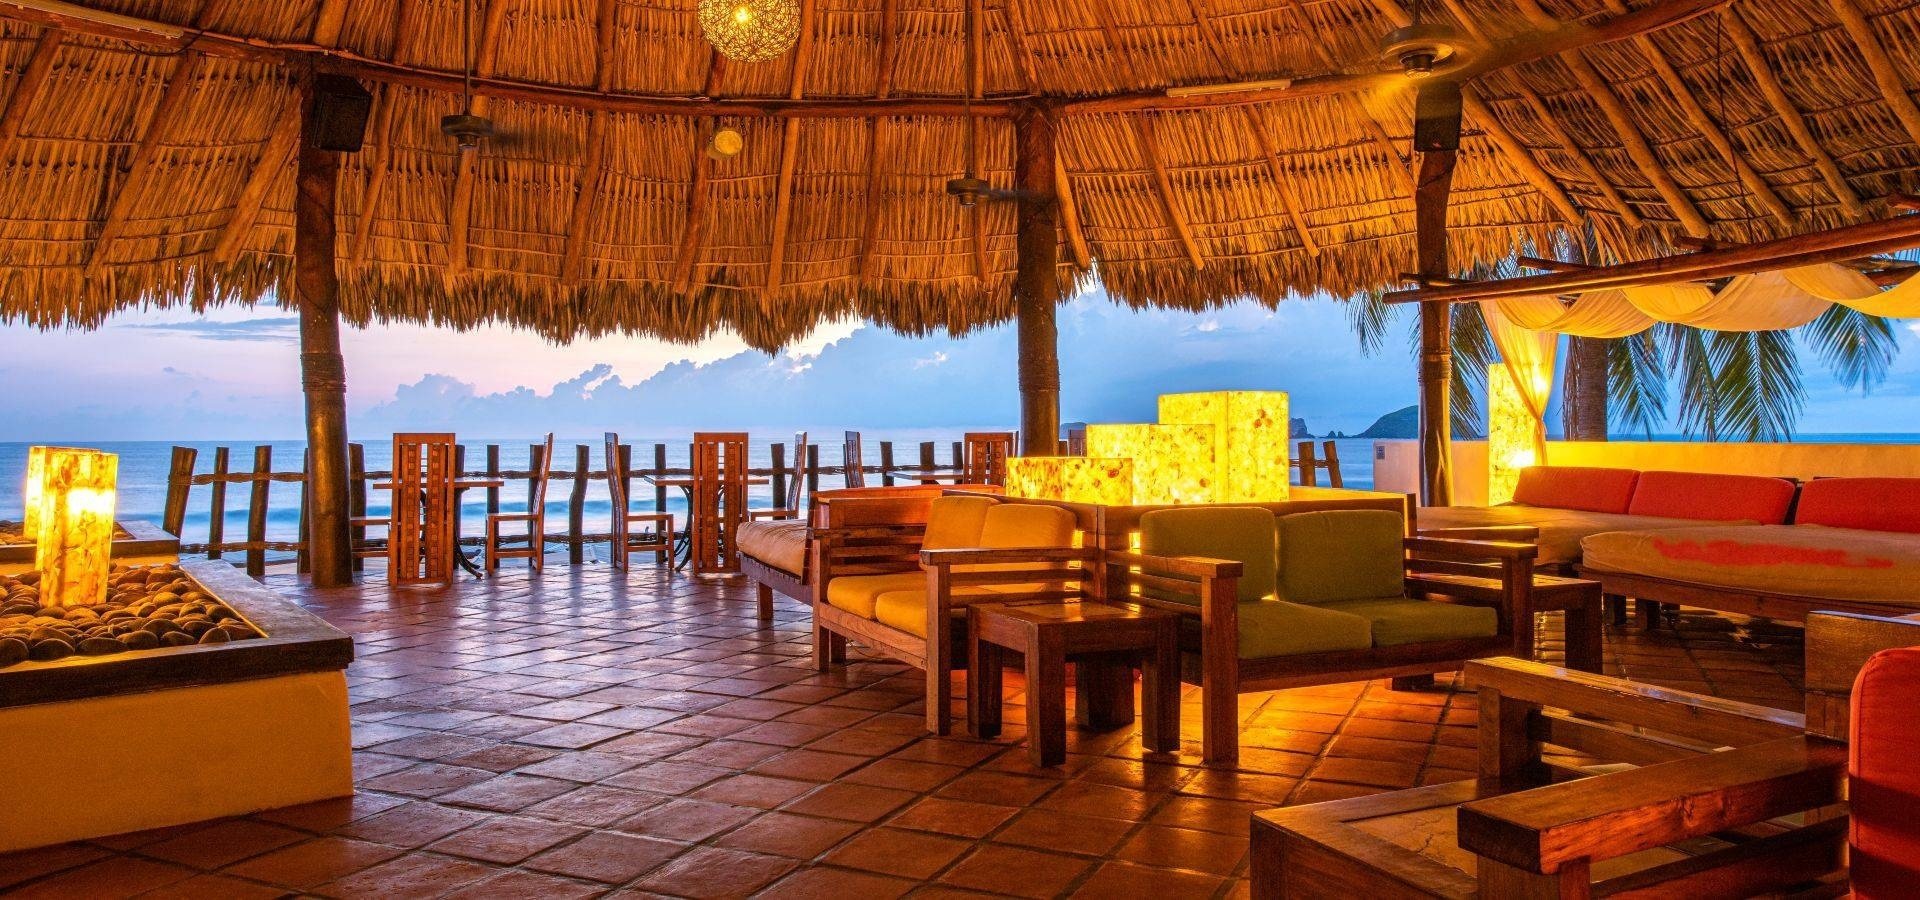 Zona con sillones y sillas para relajarse con vistas al mar del Hotel Park Royal Beach Ixtapa